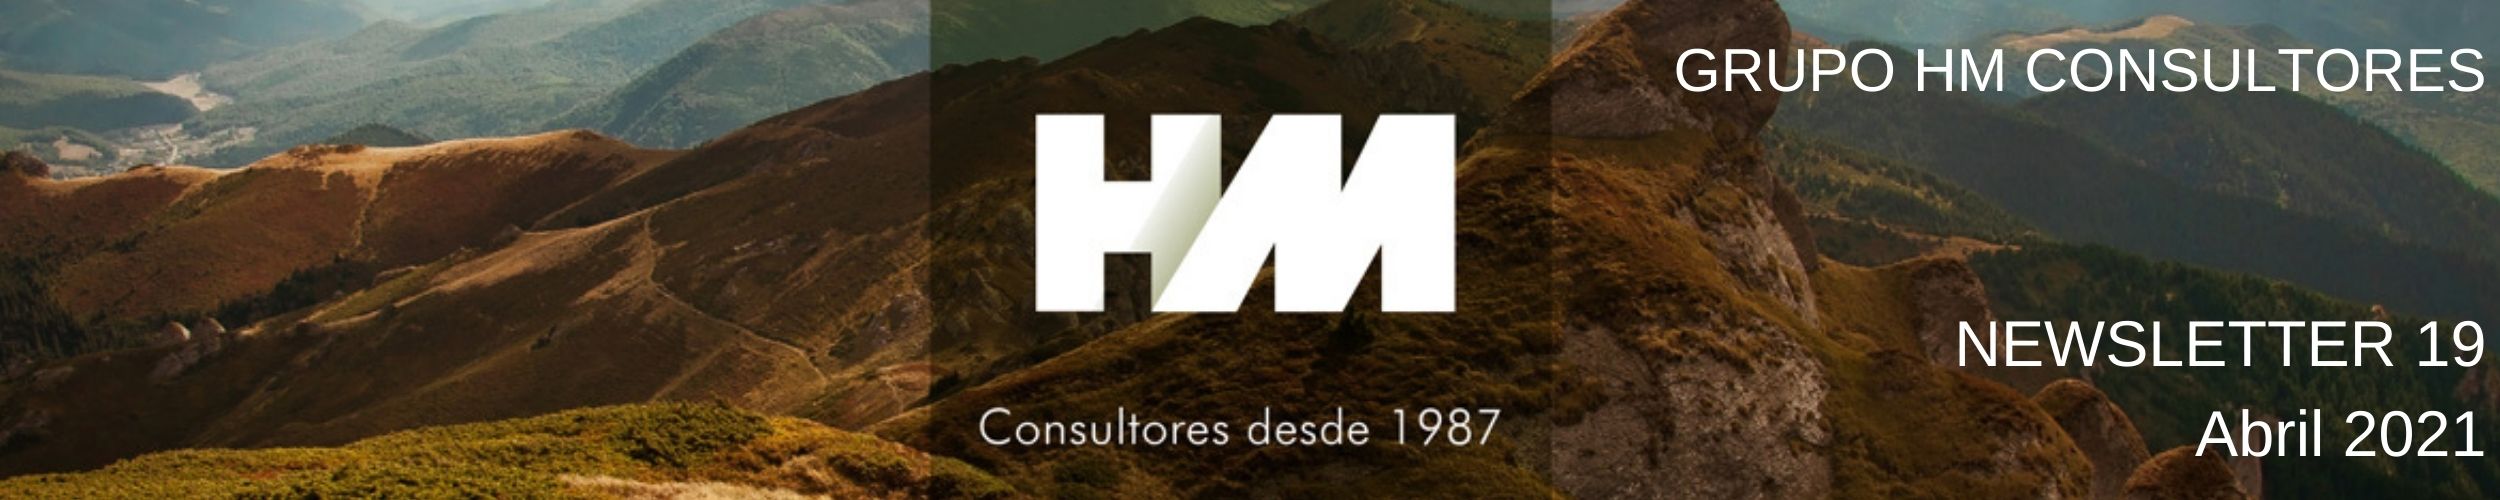 Portugal 2020 Consultoria HMW Inovação Produtiva PRR PDR 2020